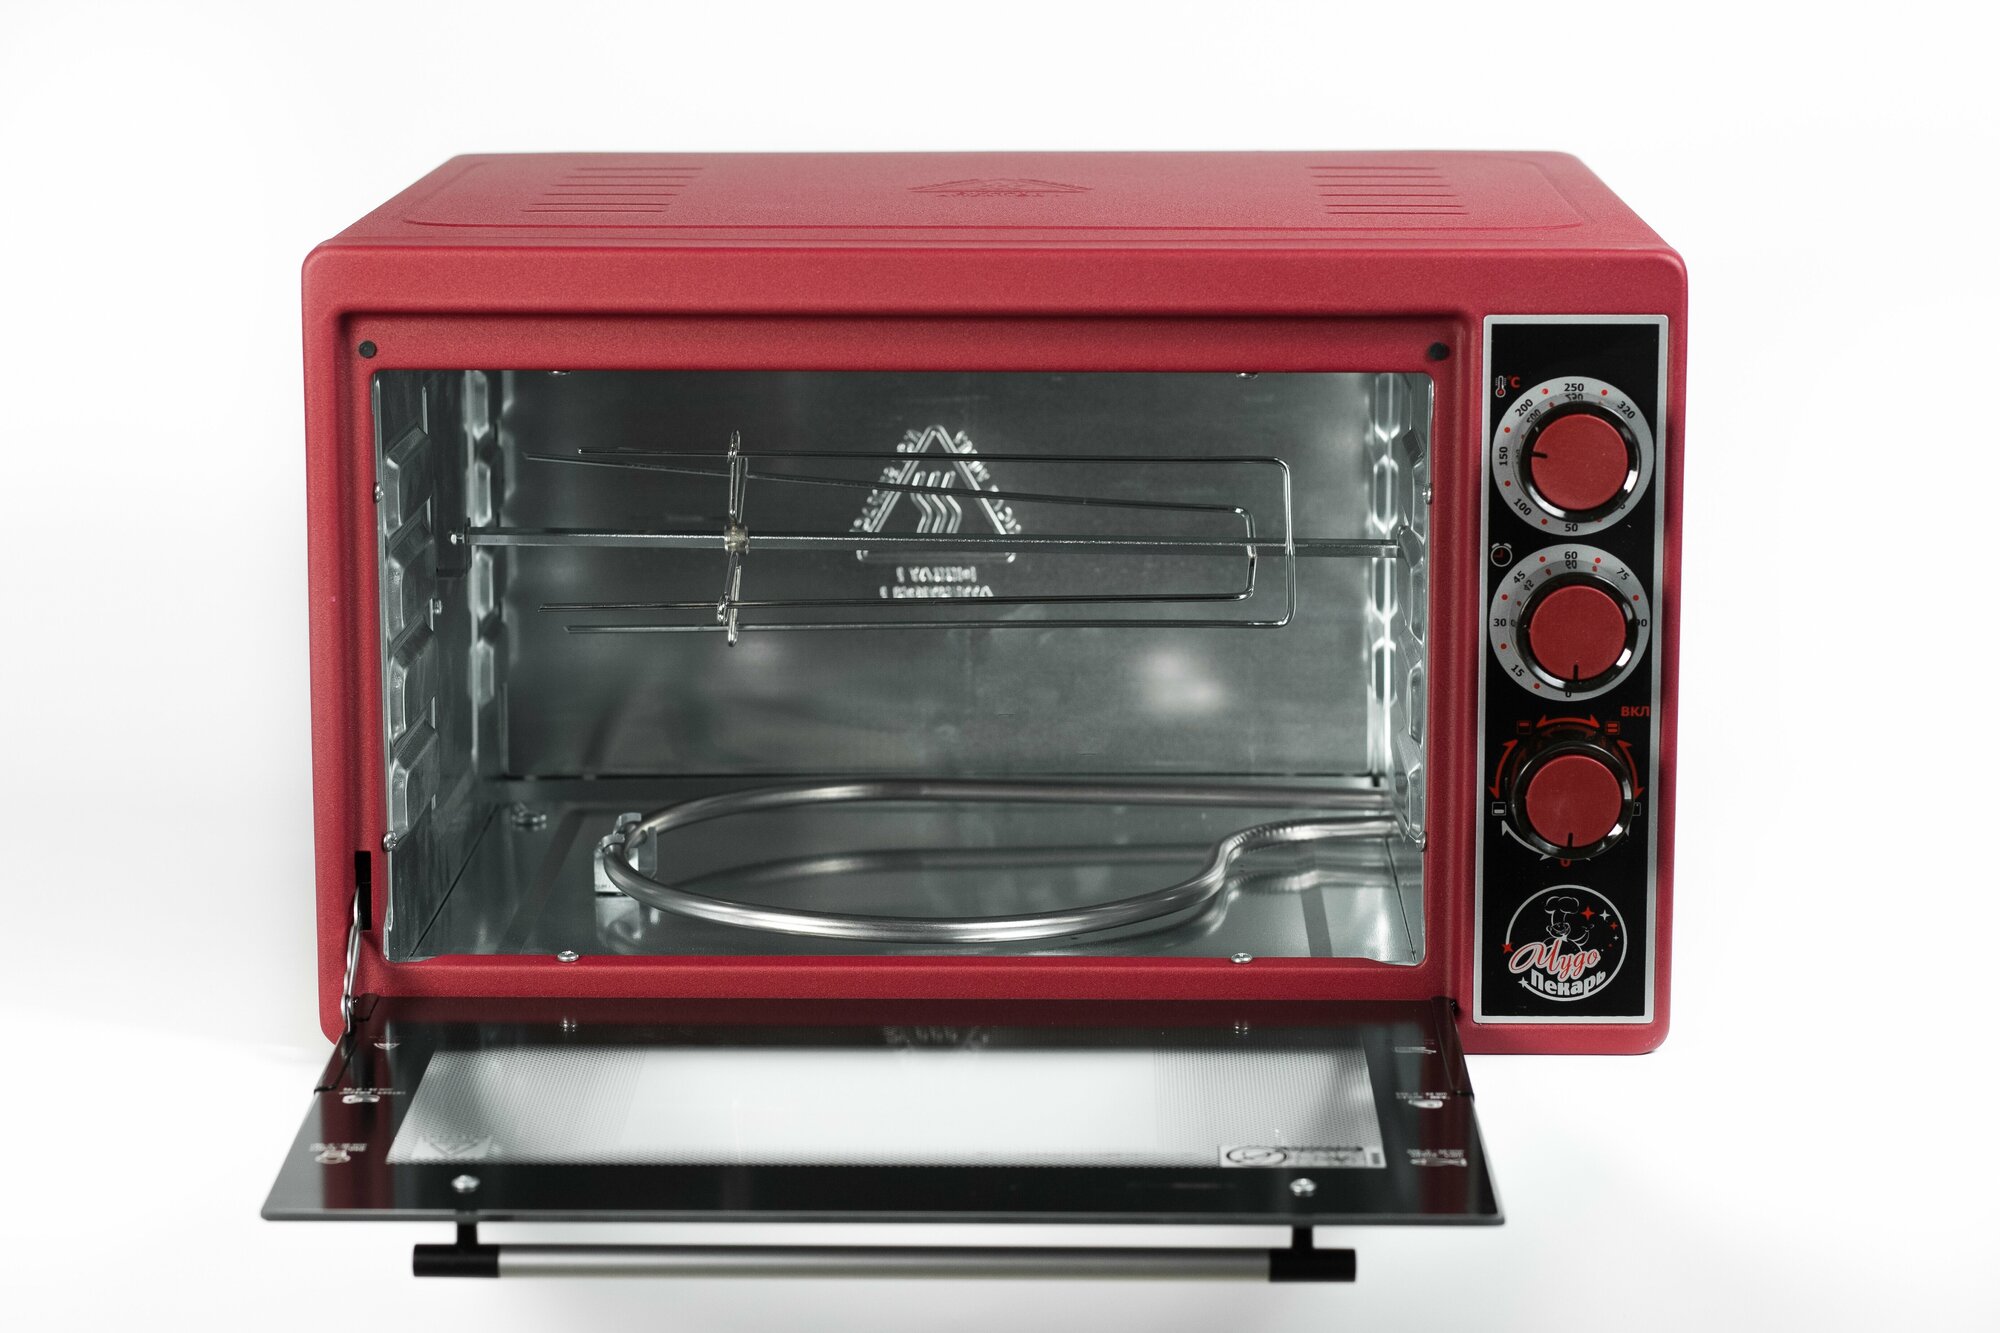 Мини-печь "чудо пекарь" ЭДБ-0124/духовка электрическая настольная (цвет красный, 39 л, 1 противень, толстый нержавеющий ТЭН повышенной мощности, таймер, гриль, терморегулятор)